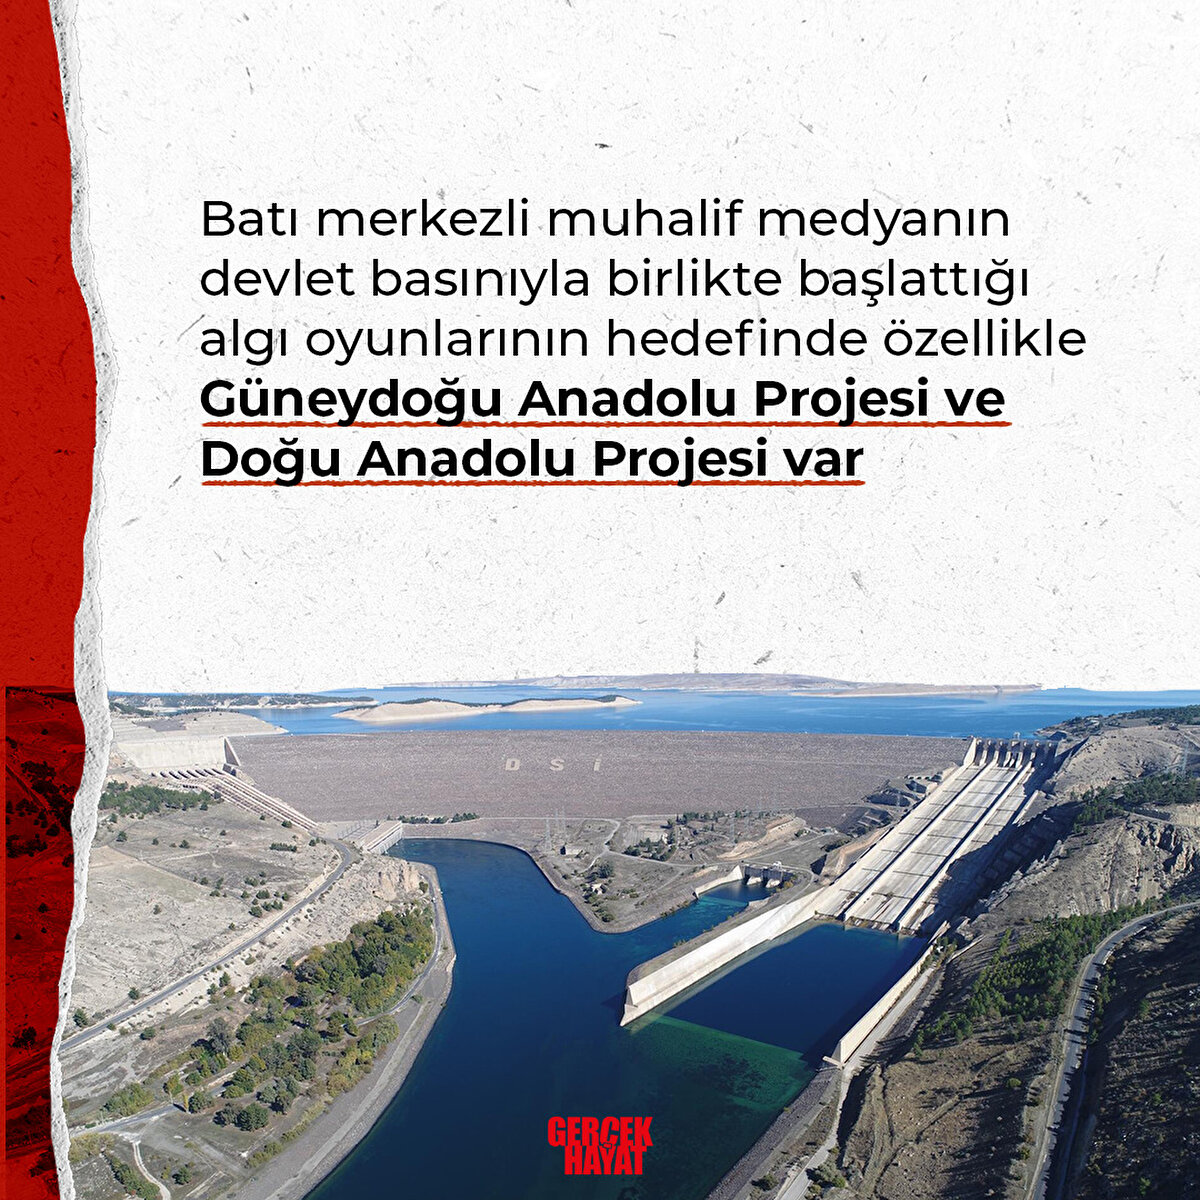 Hedefinde özellikle Güneydoğu Anadolu Projesi ve Doğu Anadolu Projesi var